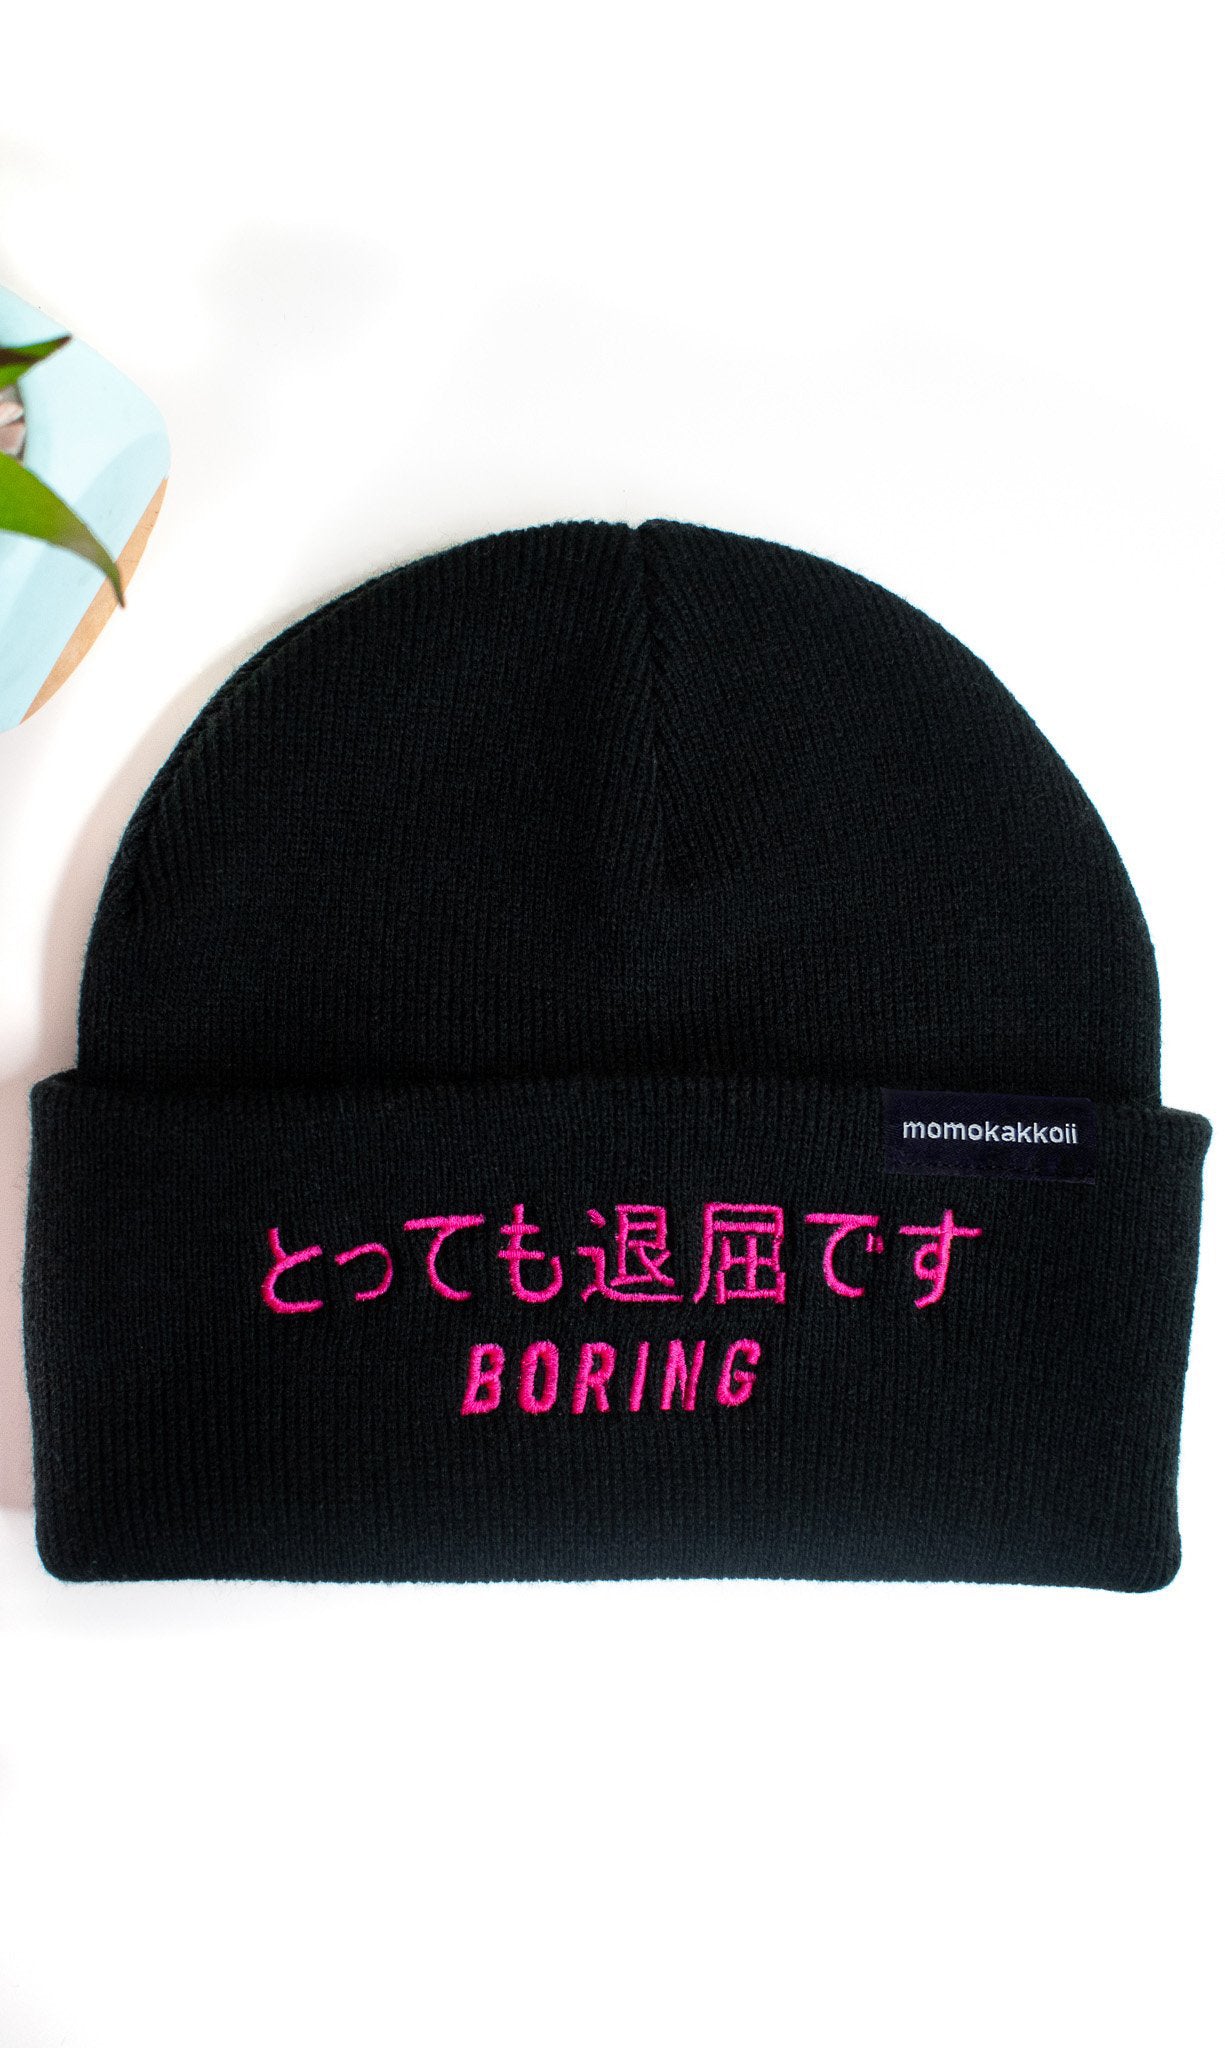 Boring Embroidered Beanie - Momokakkoii